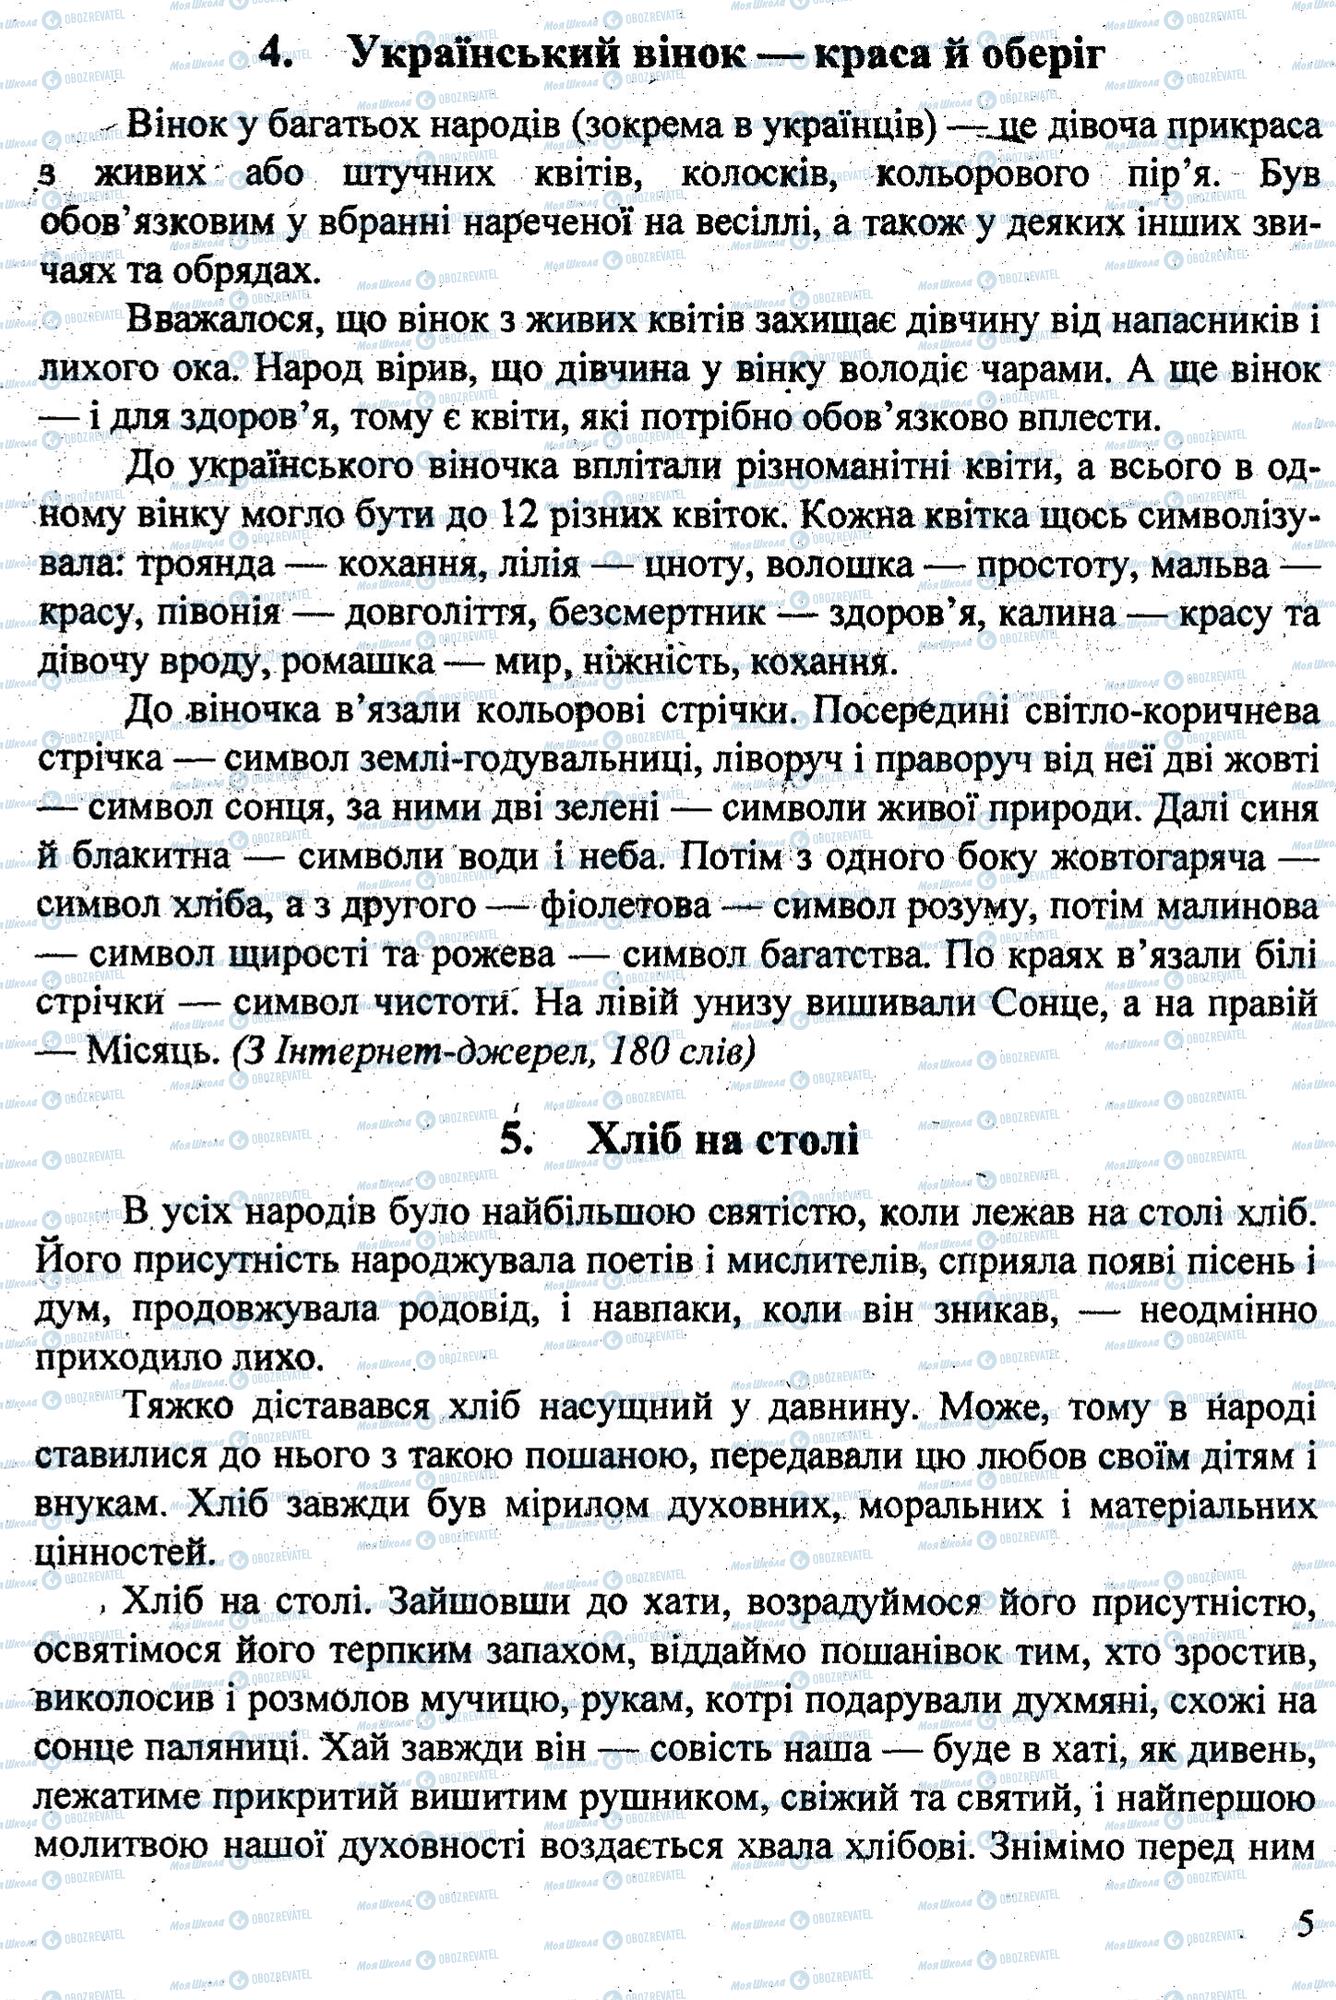 ДПА Укр мова 9 класс страница 0004